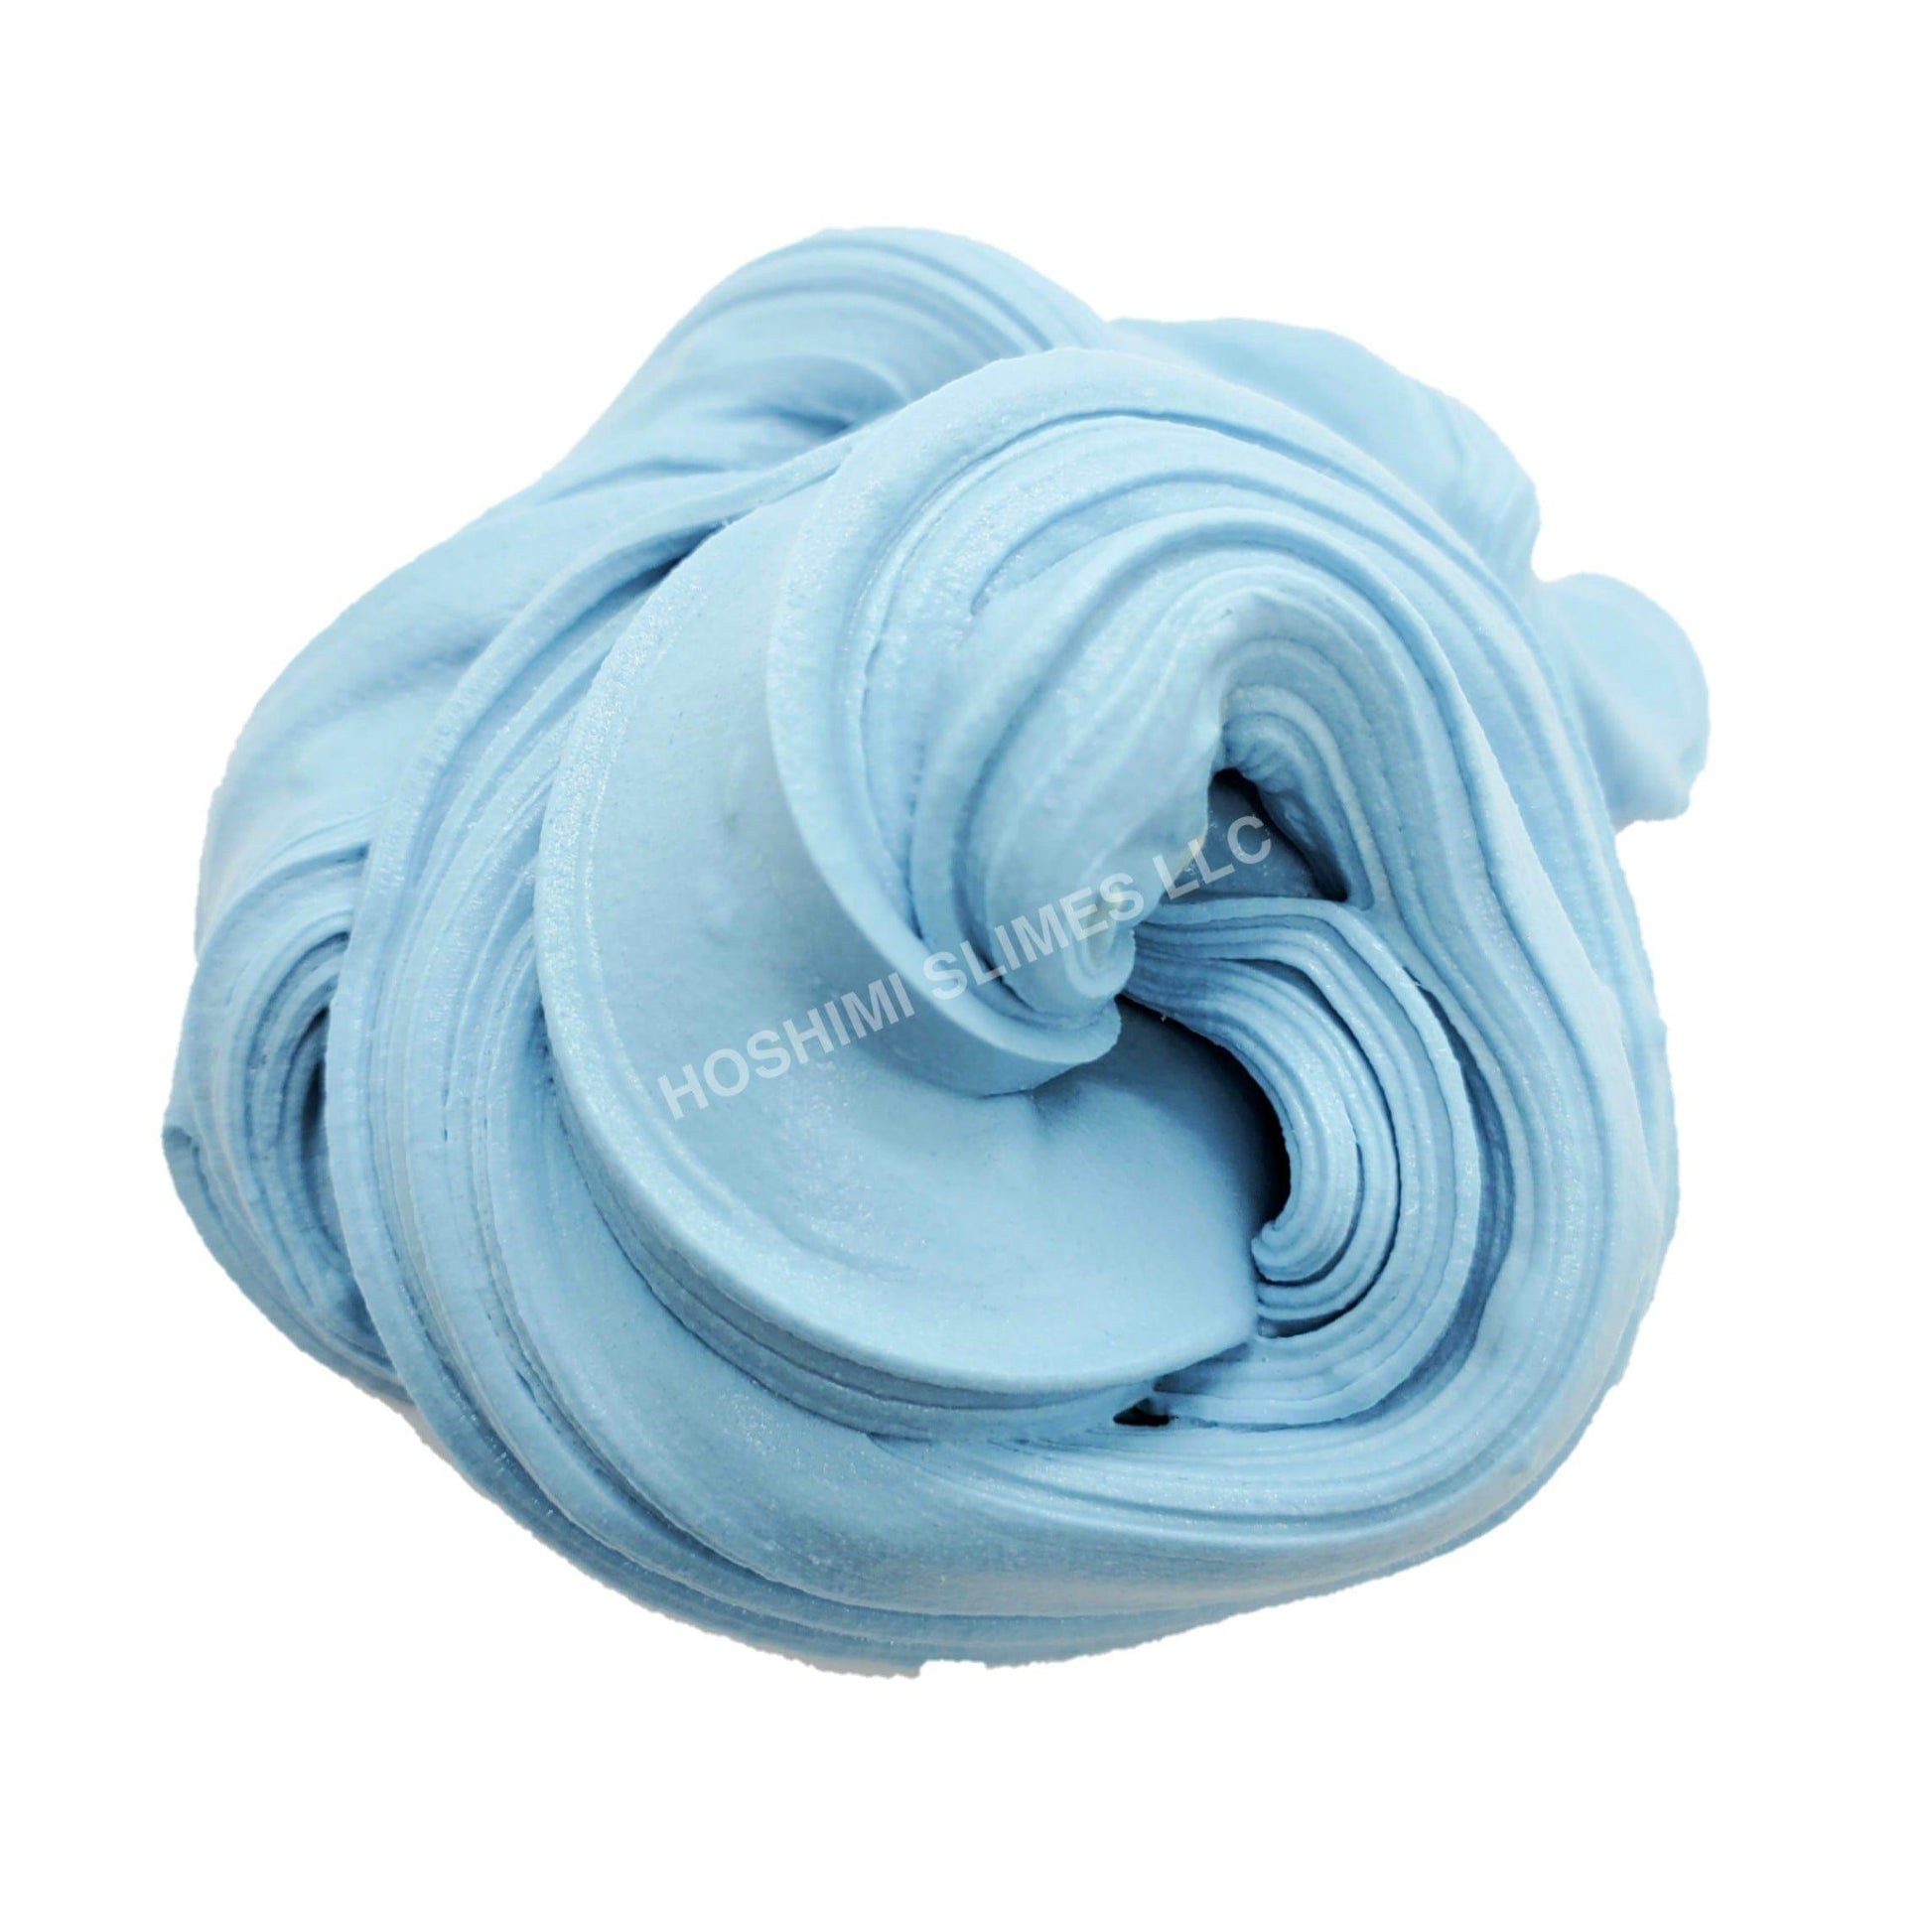 Blueberry Muffin Clay Cap Handmade Butter Slime Slime by Hoshimi Slimes LLC | Hoshimi Slimes LLC